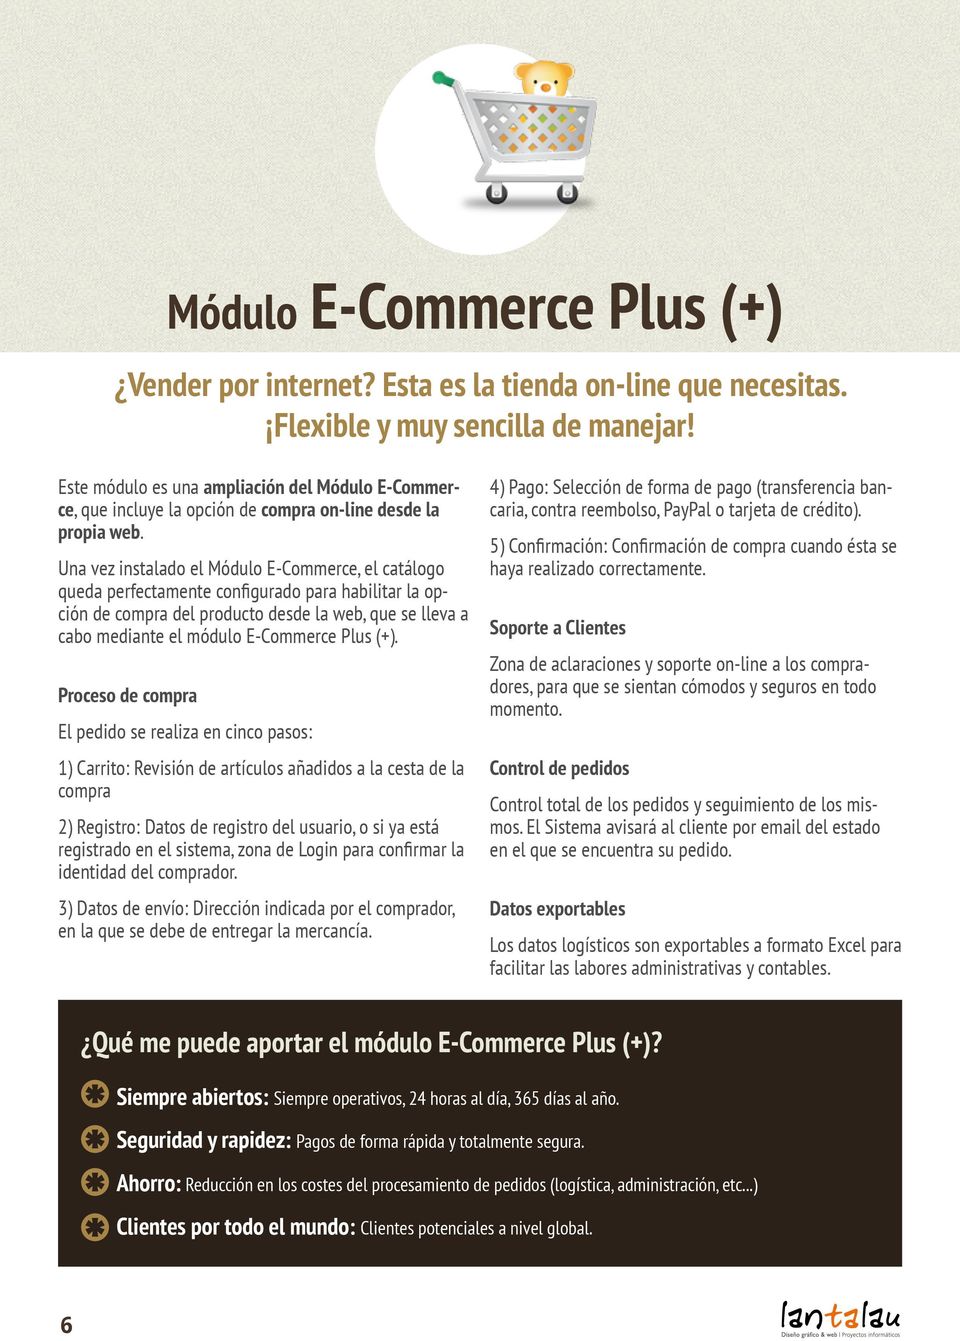 Una vez instalado el E-Commerce, el catálogo queda perfectamente configurado para habilitar la opción de compra del producto desde la web, que se lleva a cabo mediante el módulo E-Commerce Plus (+).